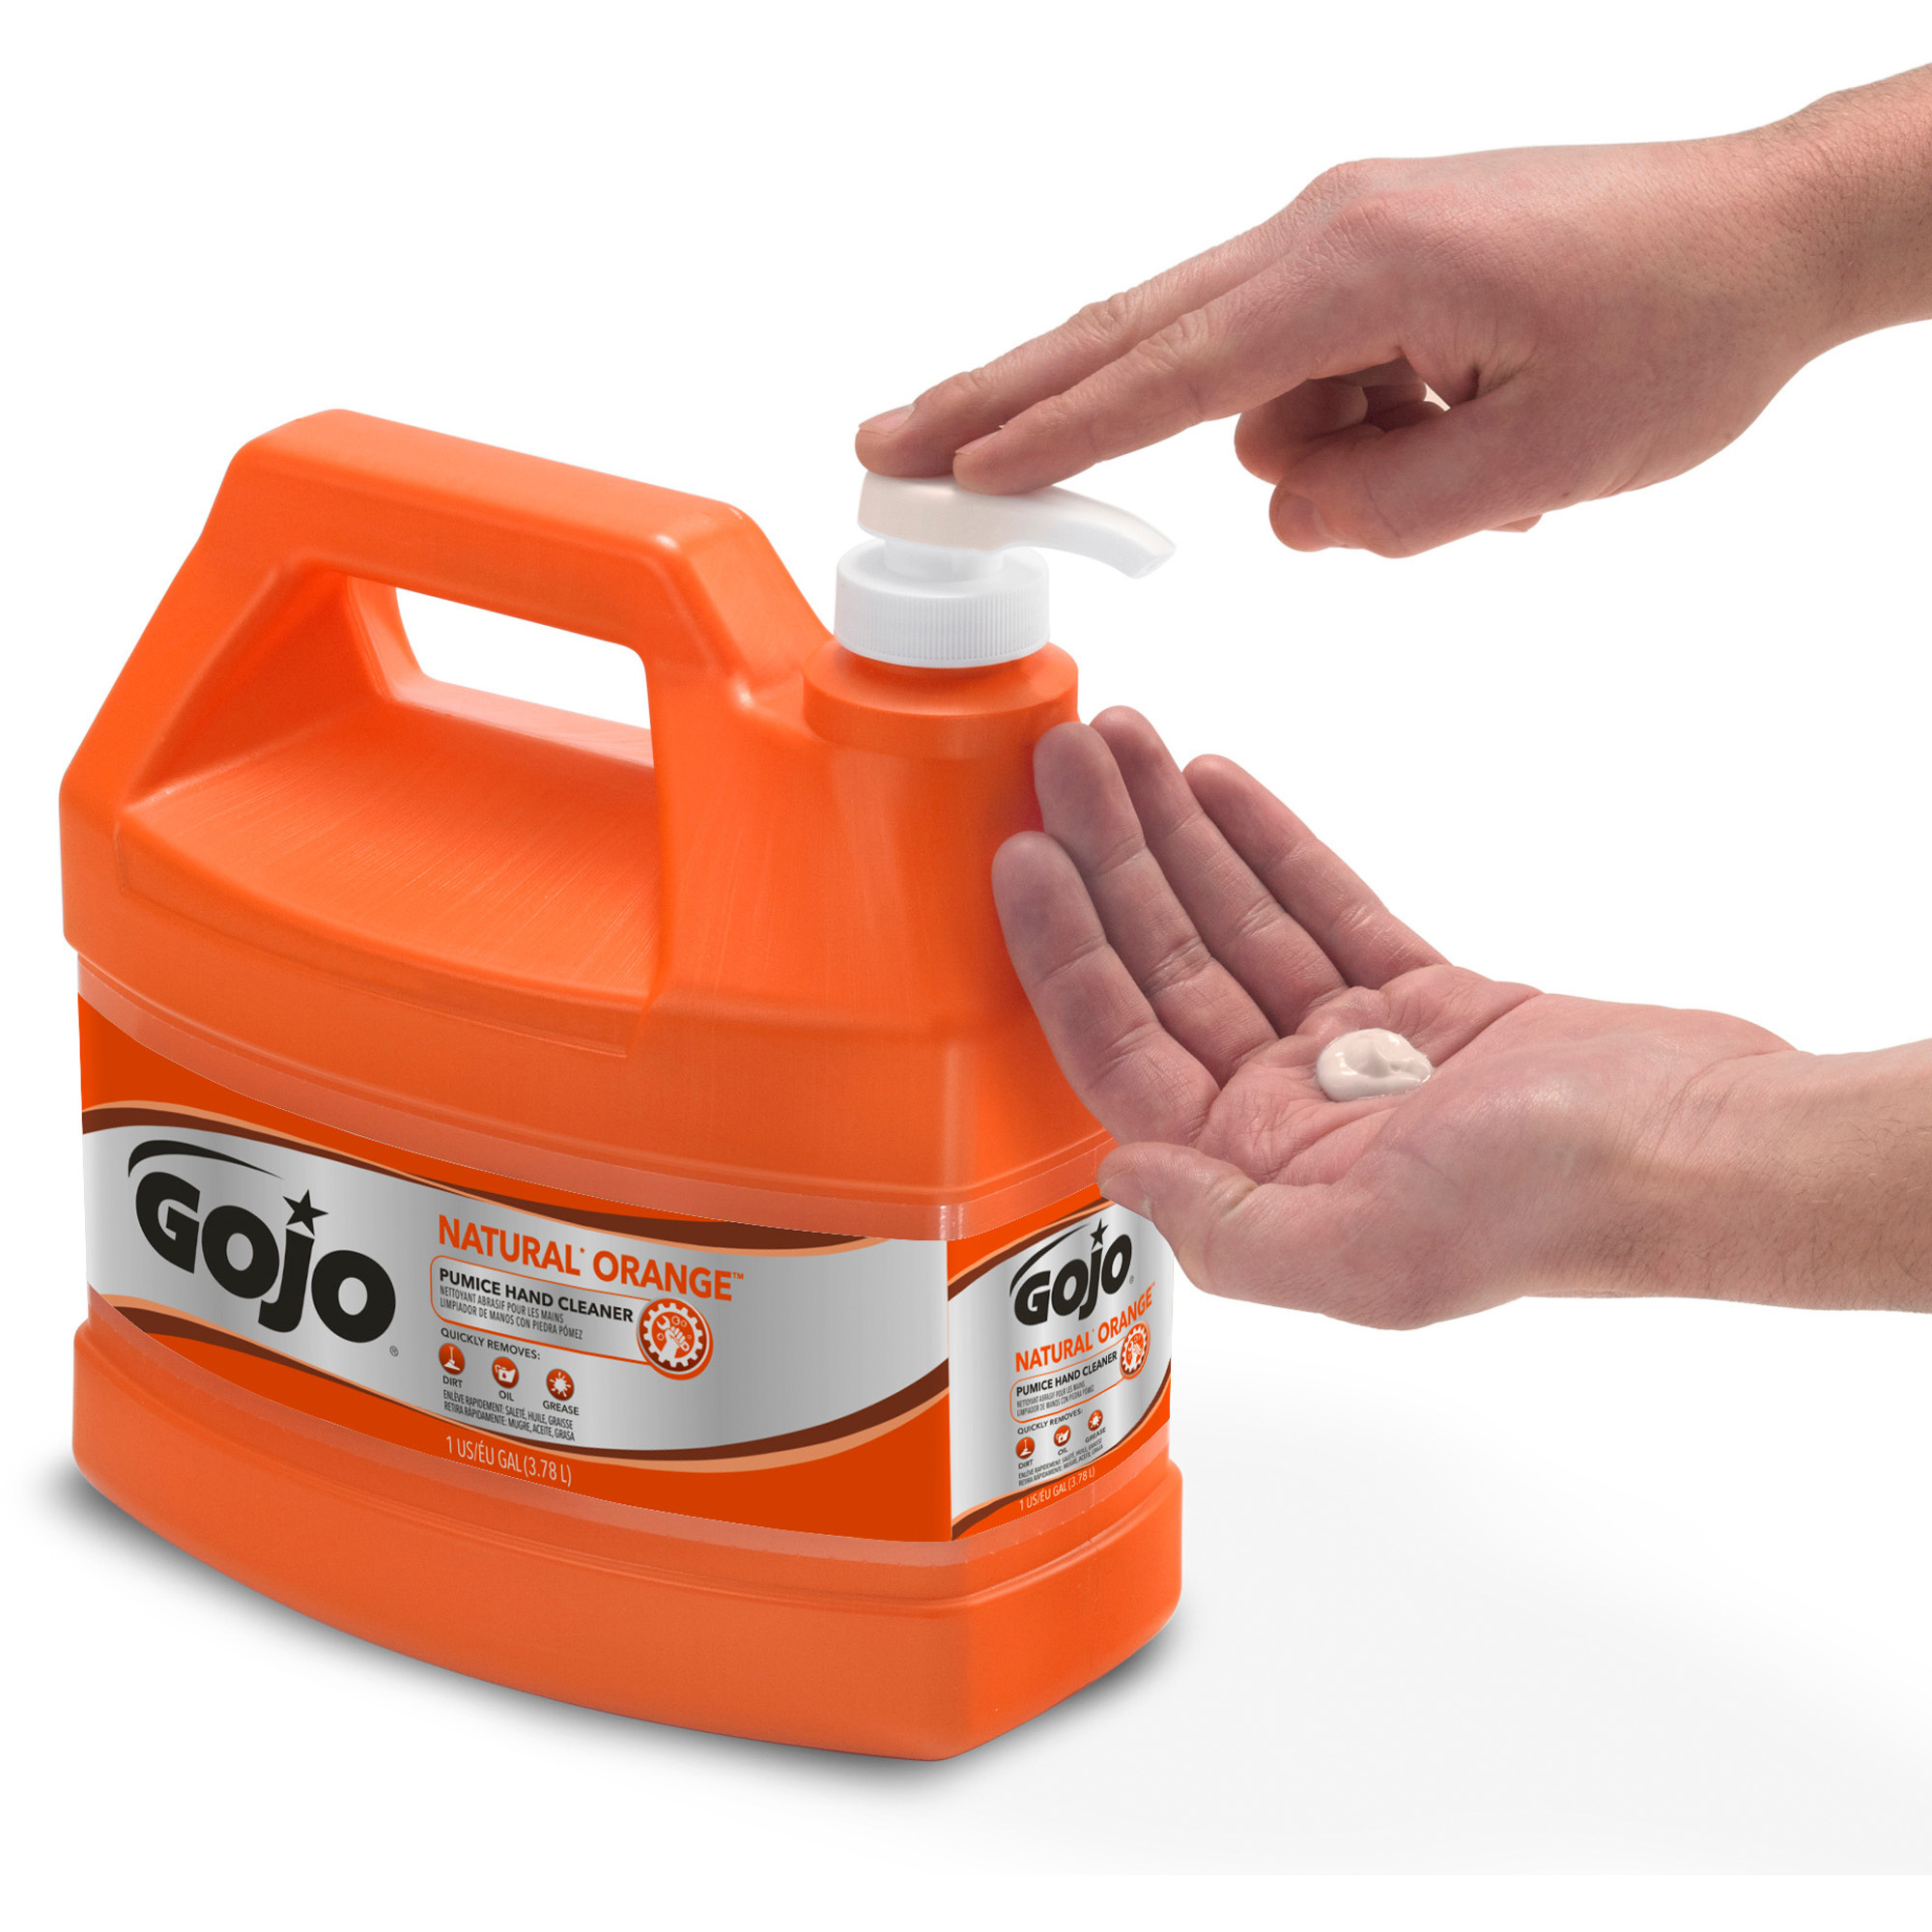 Fast Orange Hand Cleaner, Natural Orange Citrus, Pumice - 15 fl oz